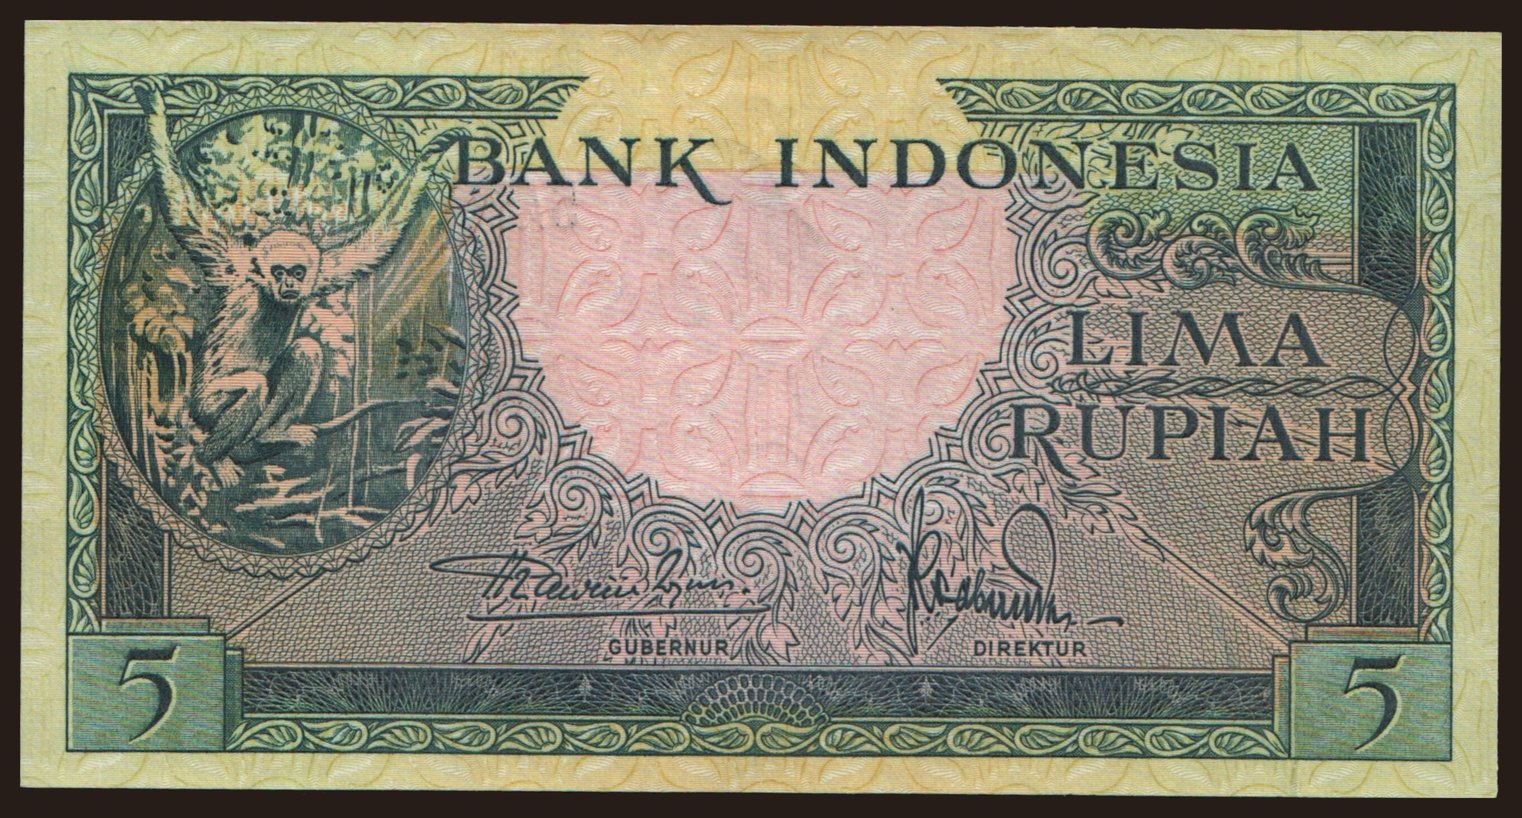 5 rupiah, 1957